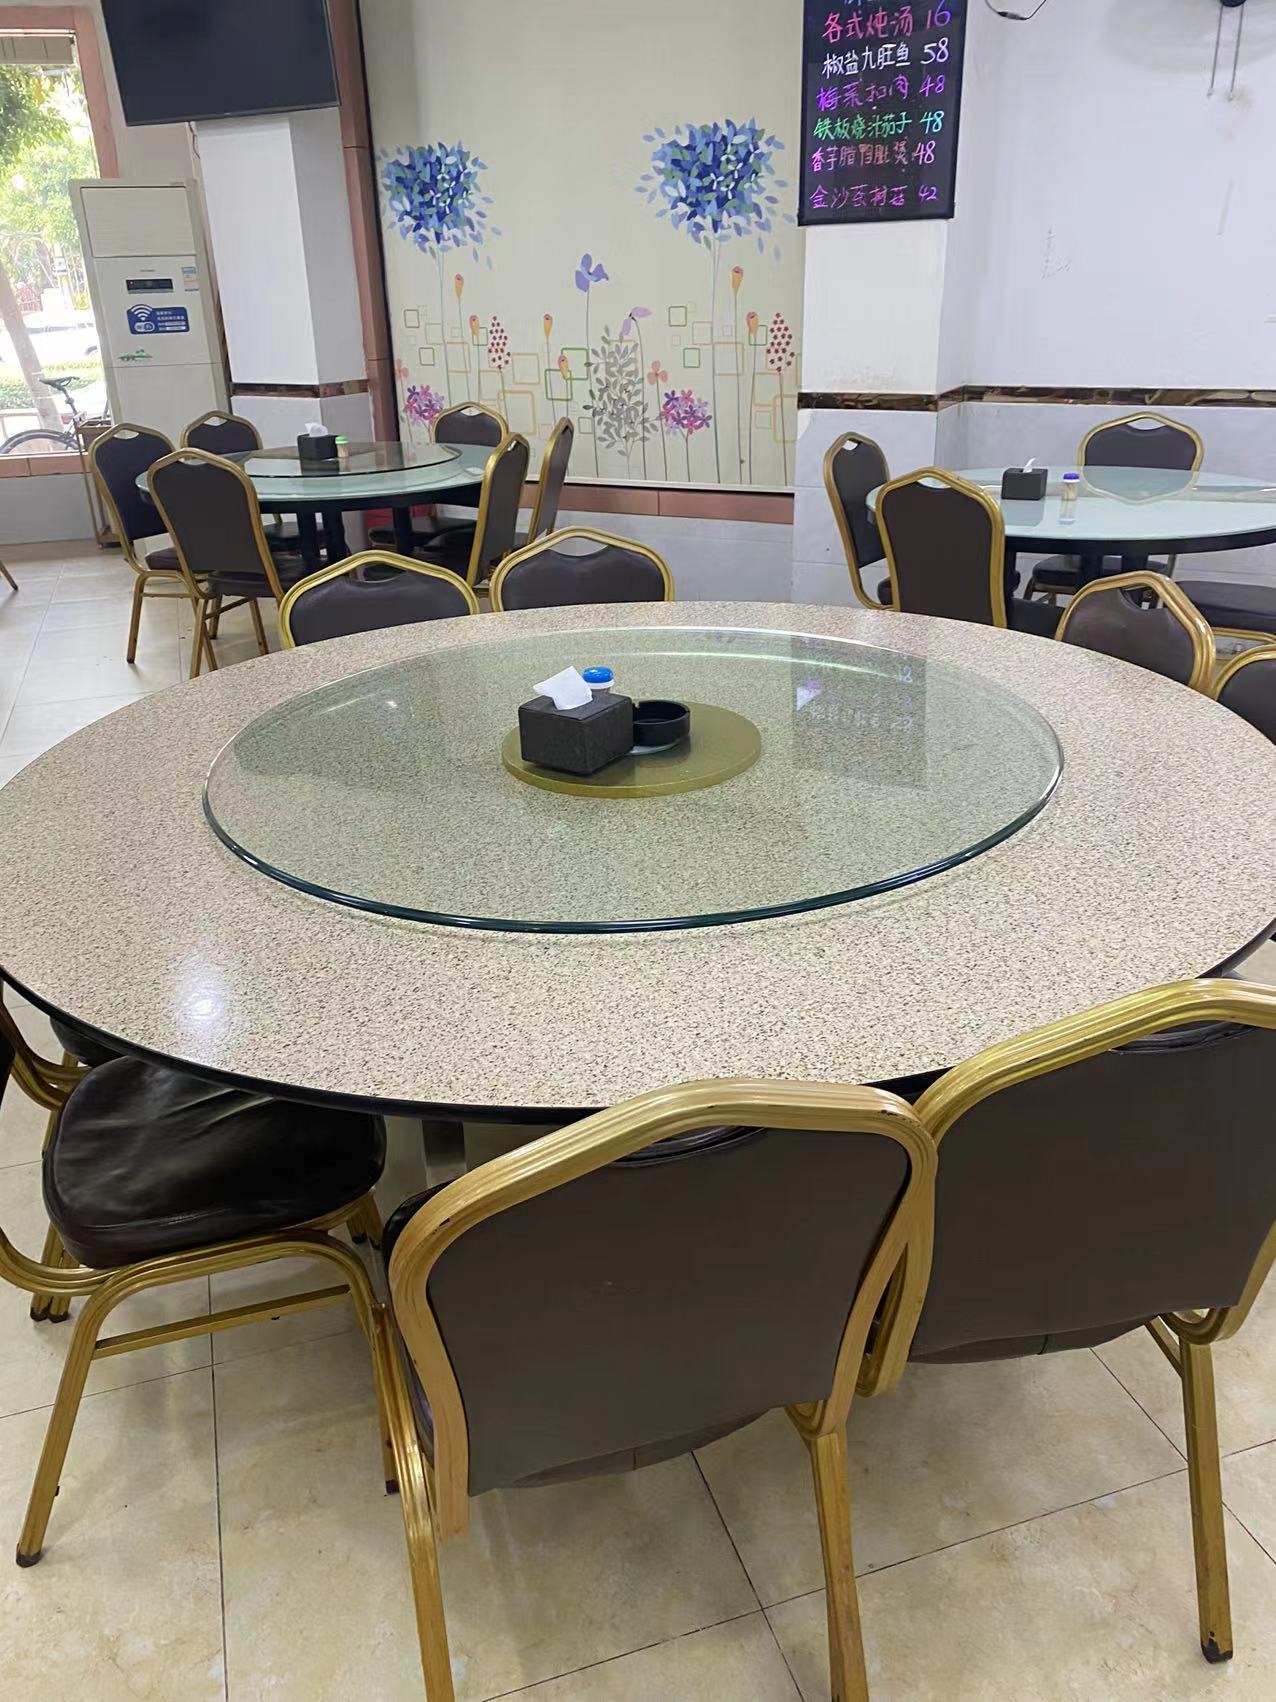 广州深圳东莞中西餐厅设备桌椅回收商  专业二手设备回收电话价格  餐厅桌椅回收